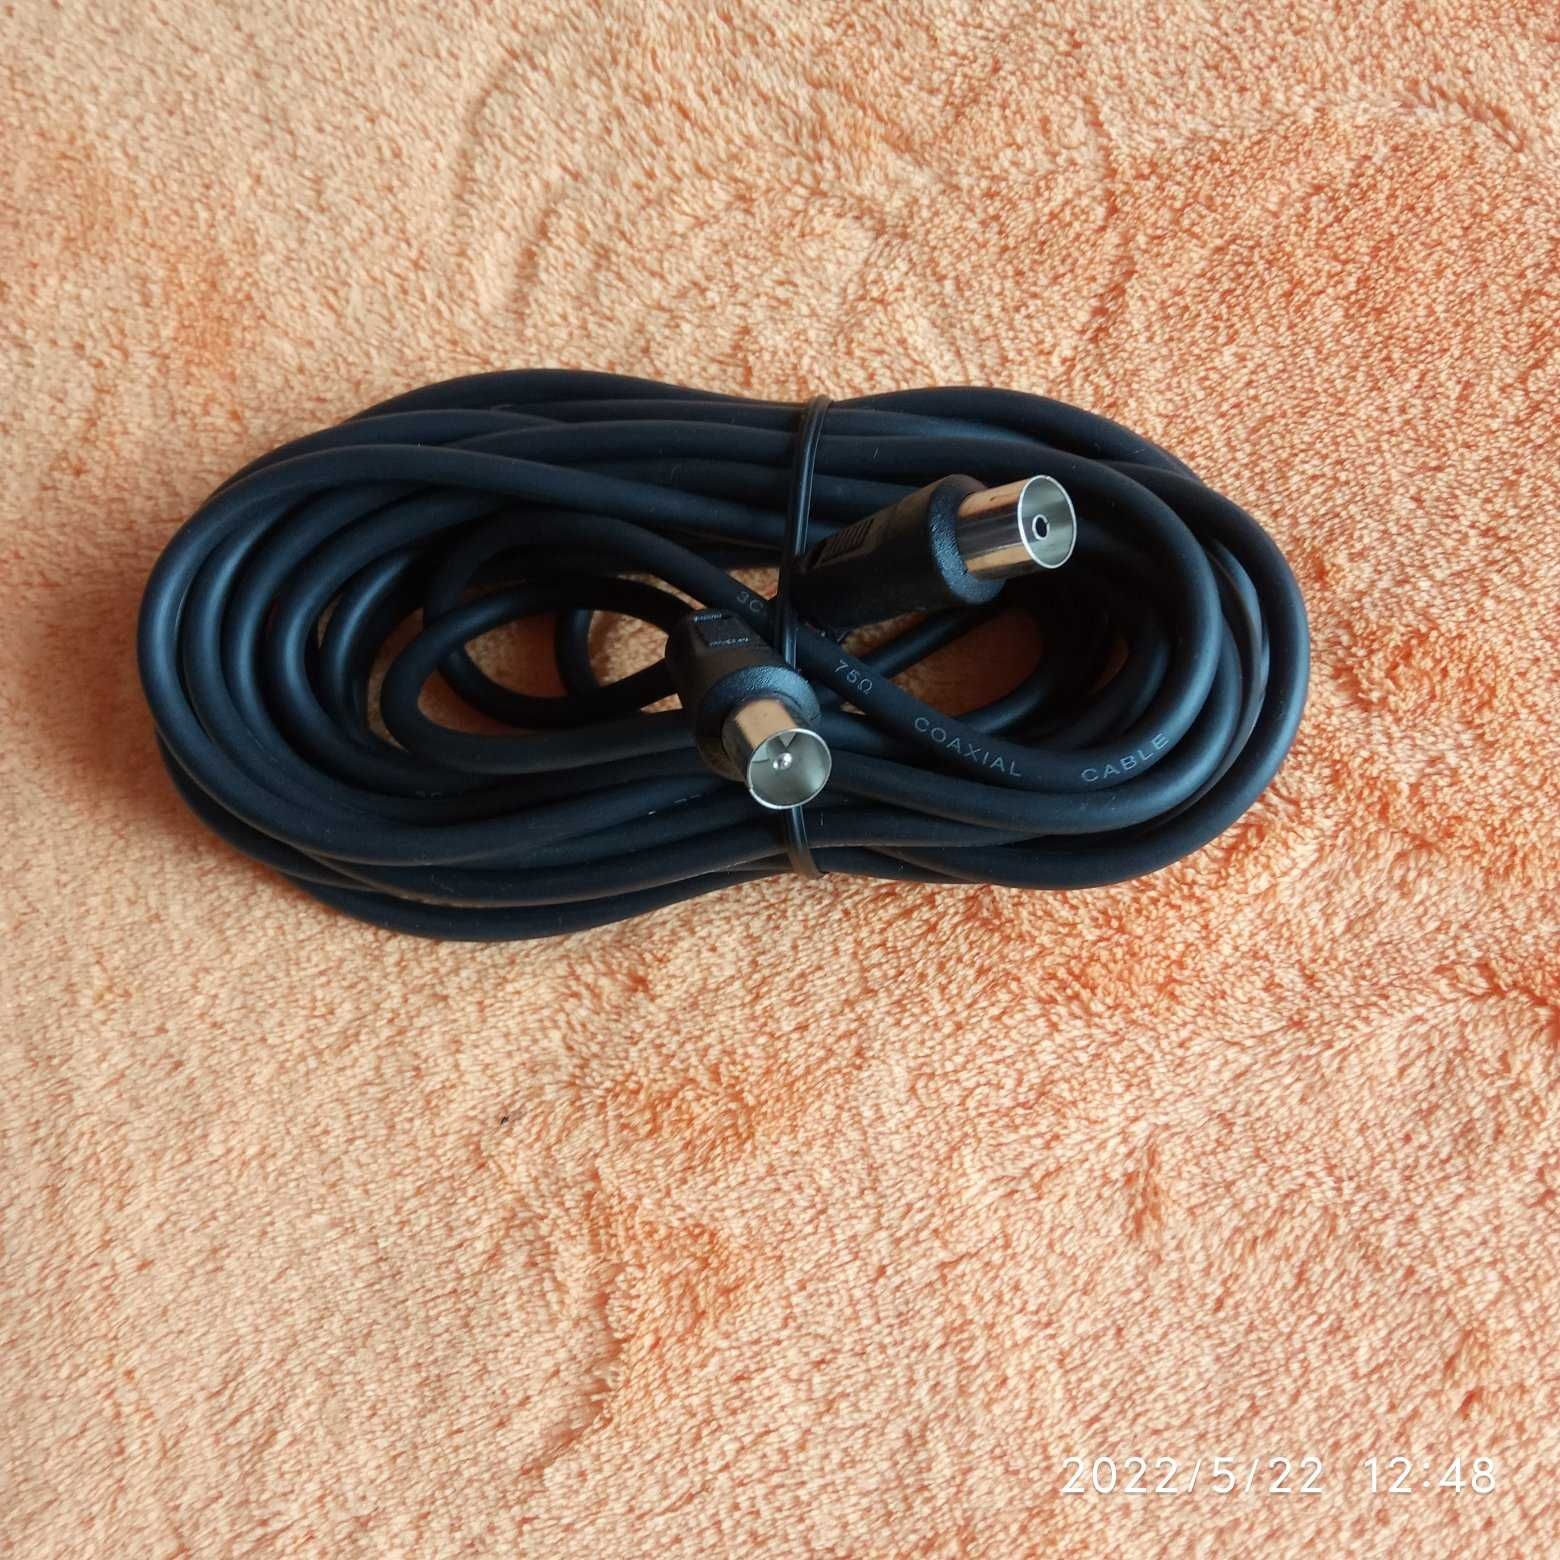 TV-VIDEO kabel przewód złącze wtyk gniazdo IEC nieużywany Długość 5 m